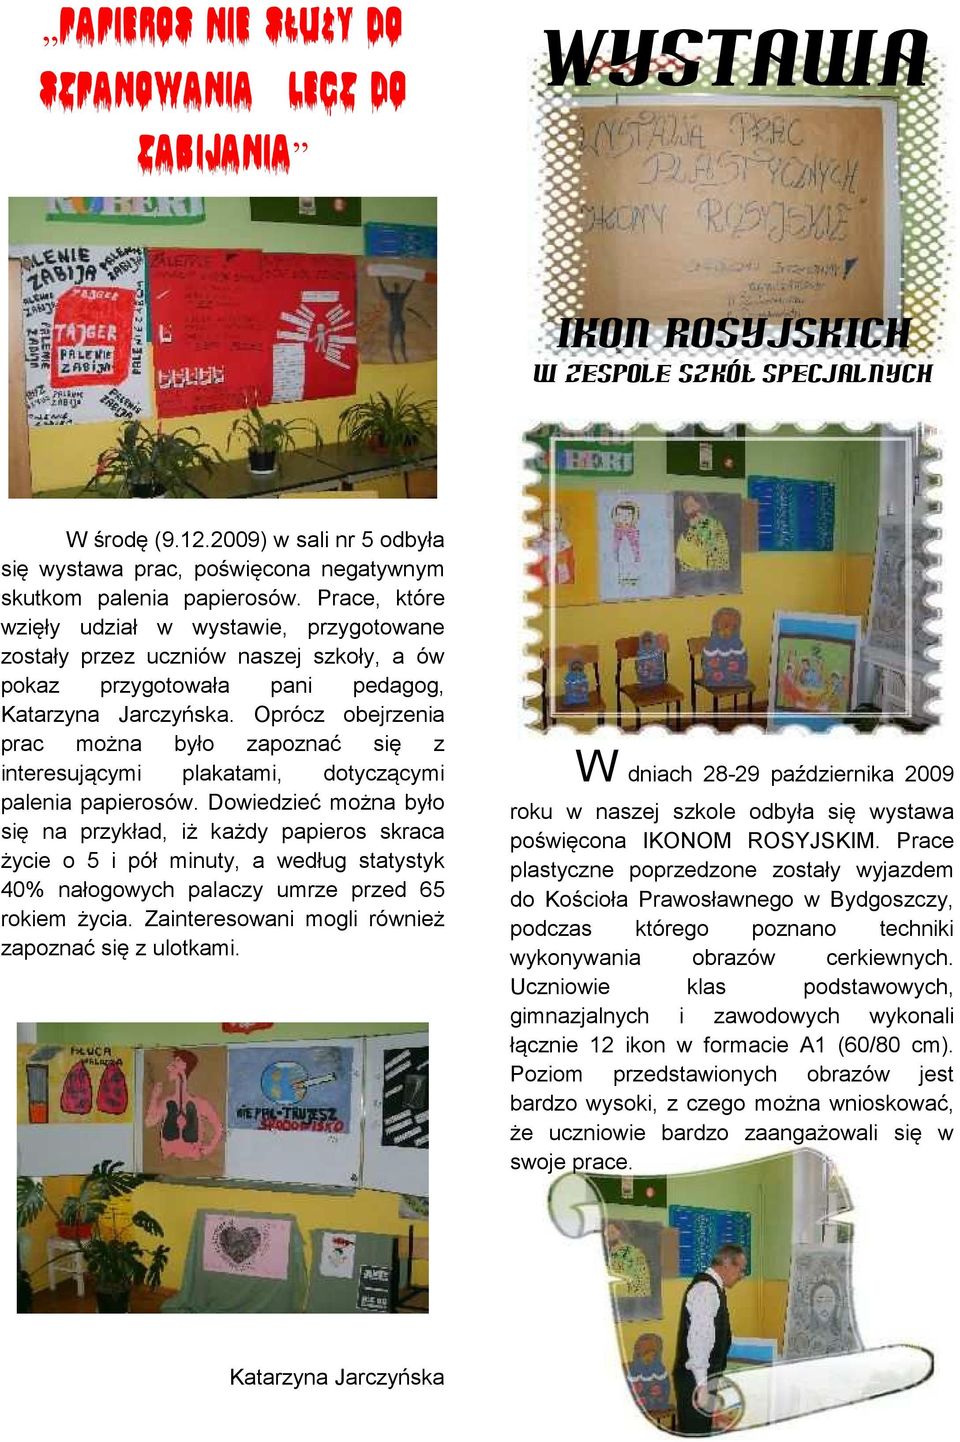 Prace, które wzięły udział w wystawie, przygotowane zostały przez uczniów naszej szkoły, a ów pokaz przygotowała pani pedagog, Katarzyna Jarczyńska.